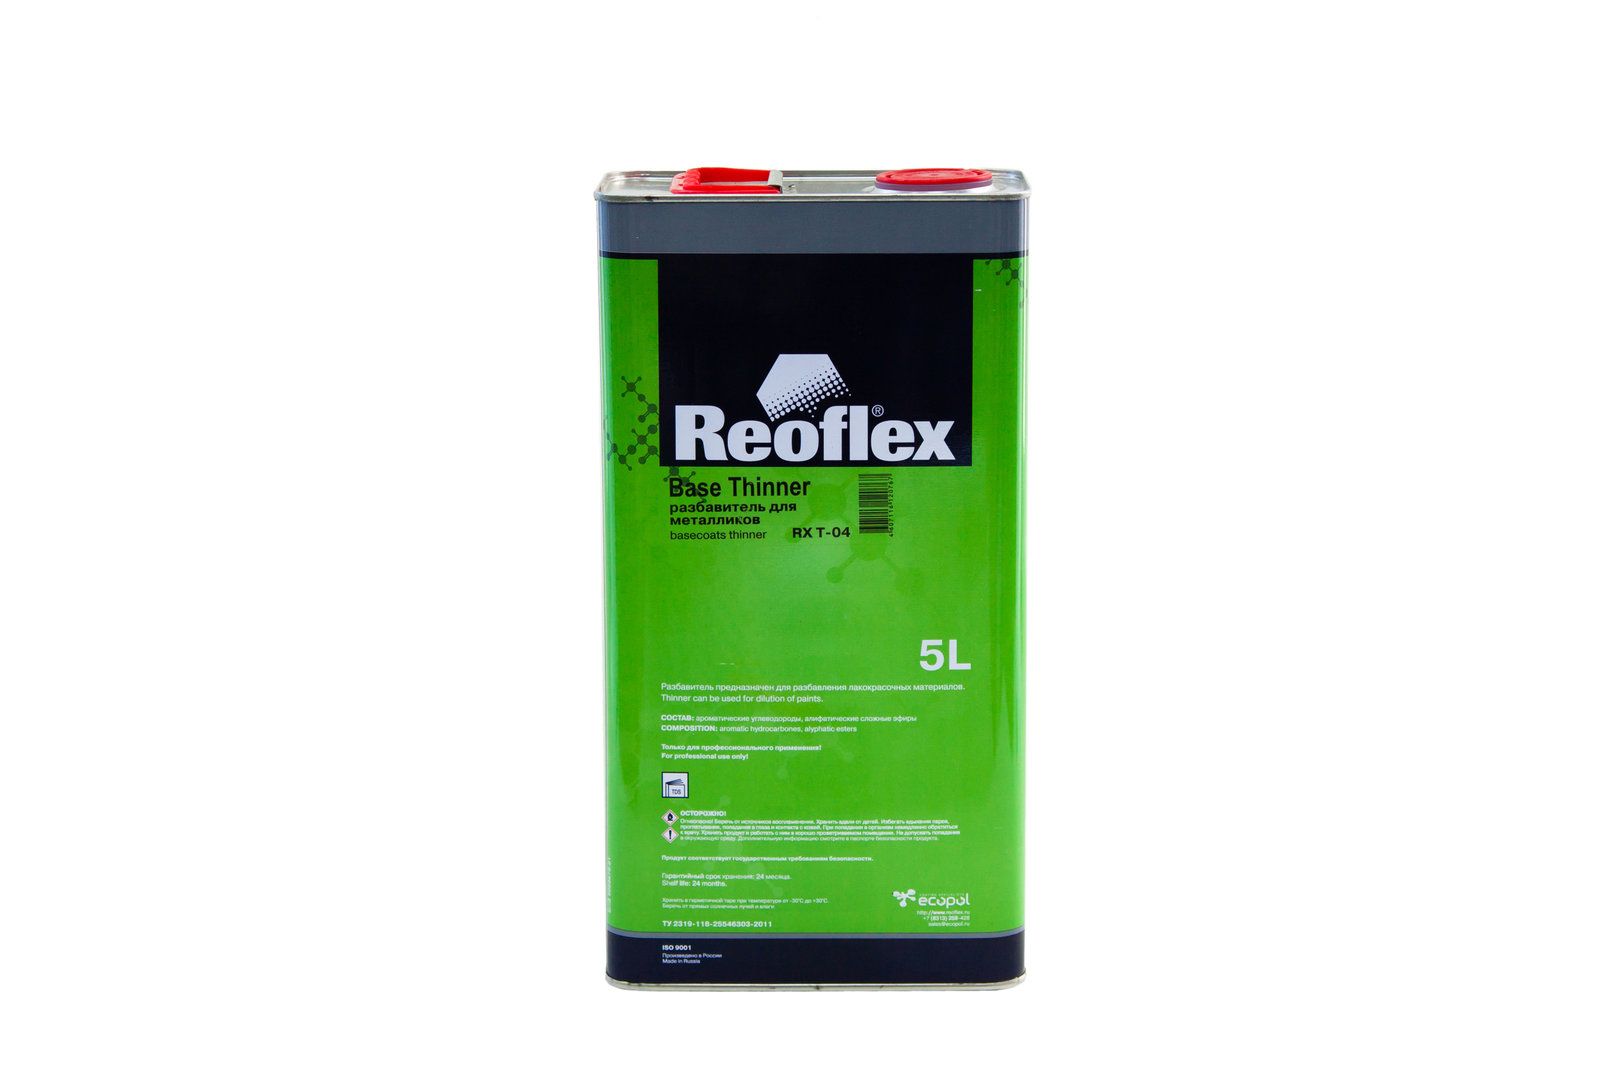 Разбавитель для металликов. Разбавитель для металликов Reoflex 5л. Reoflex разбавитель для металликов (1л). Reoflex разбавитель для металликов 0,5л. Reoflex Базовая эмаль 25л.